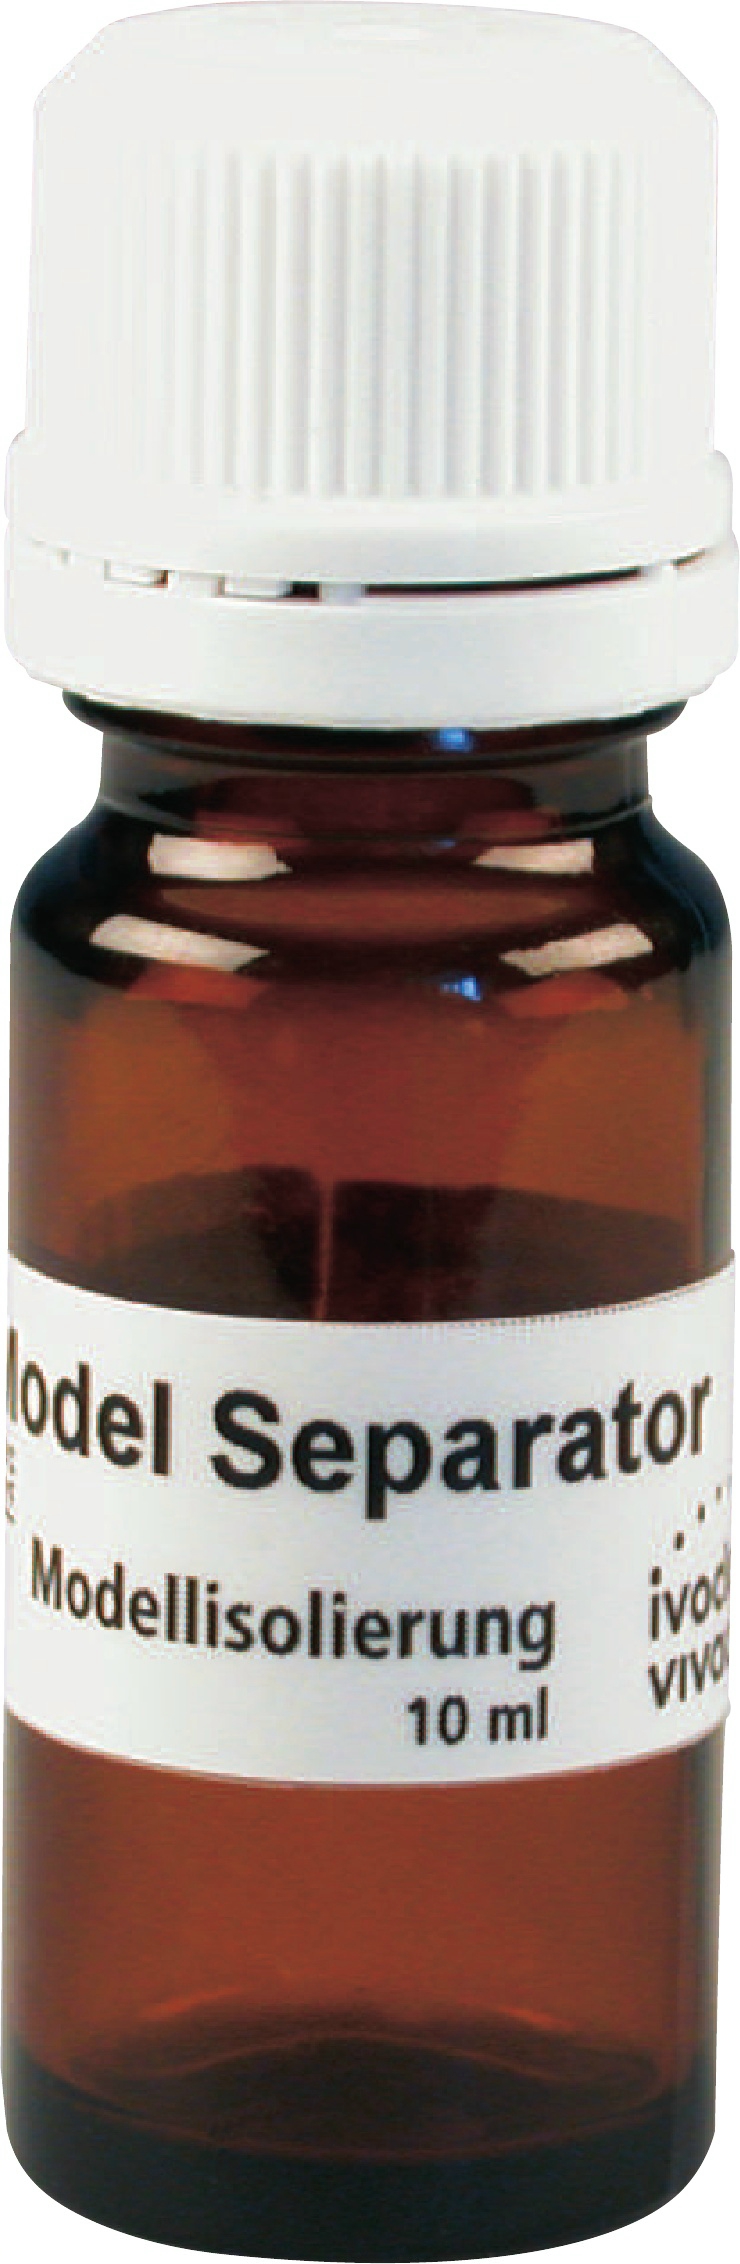 SR Model separator 10 ml